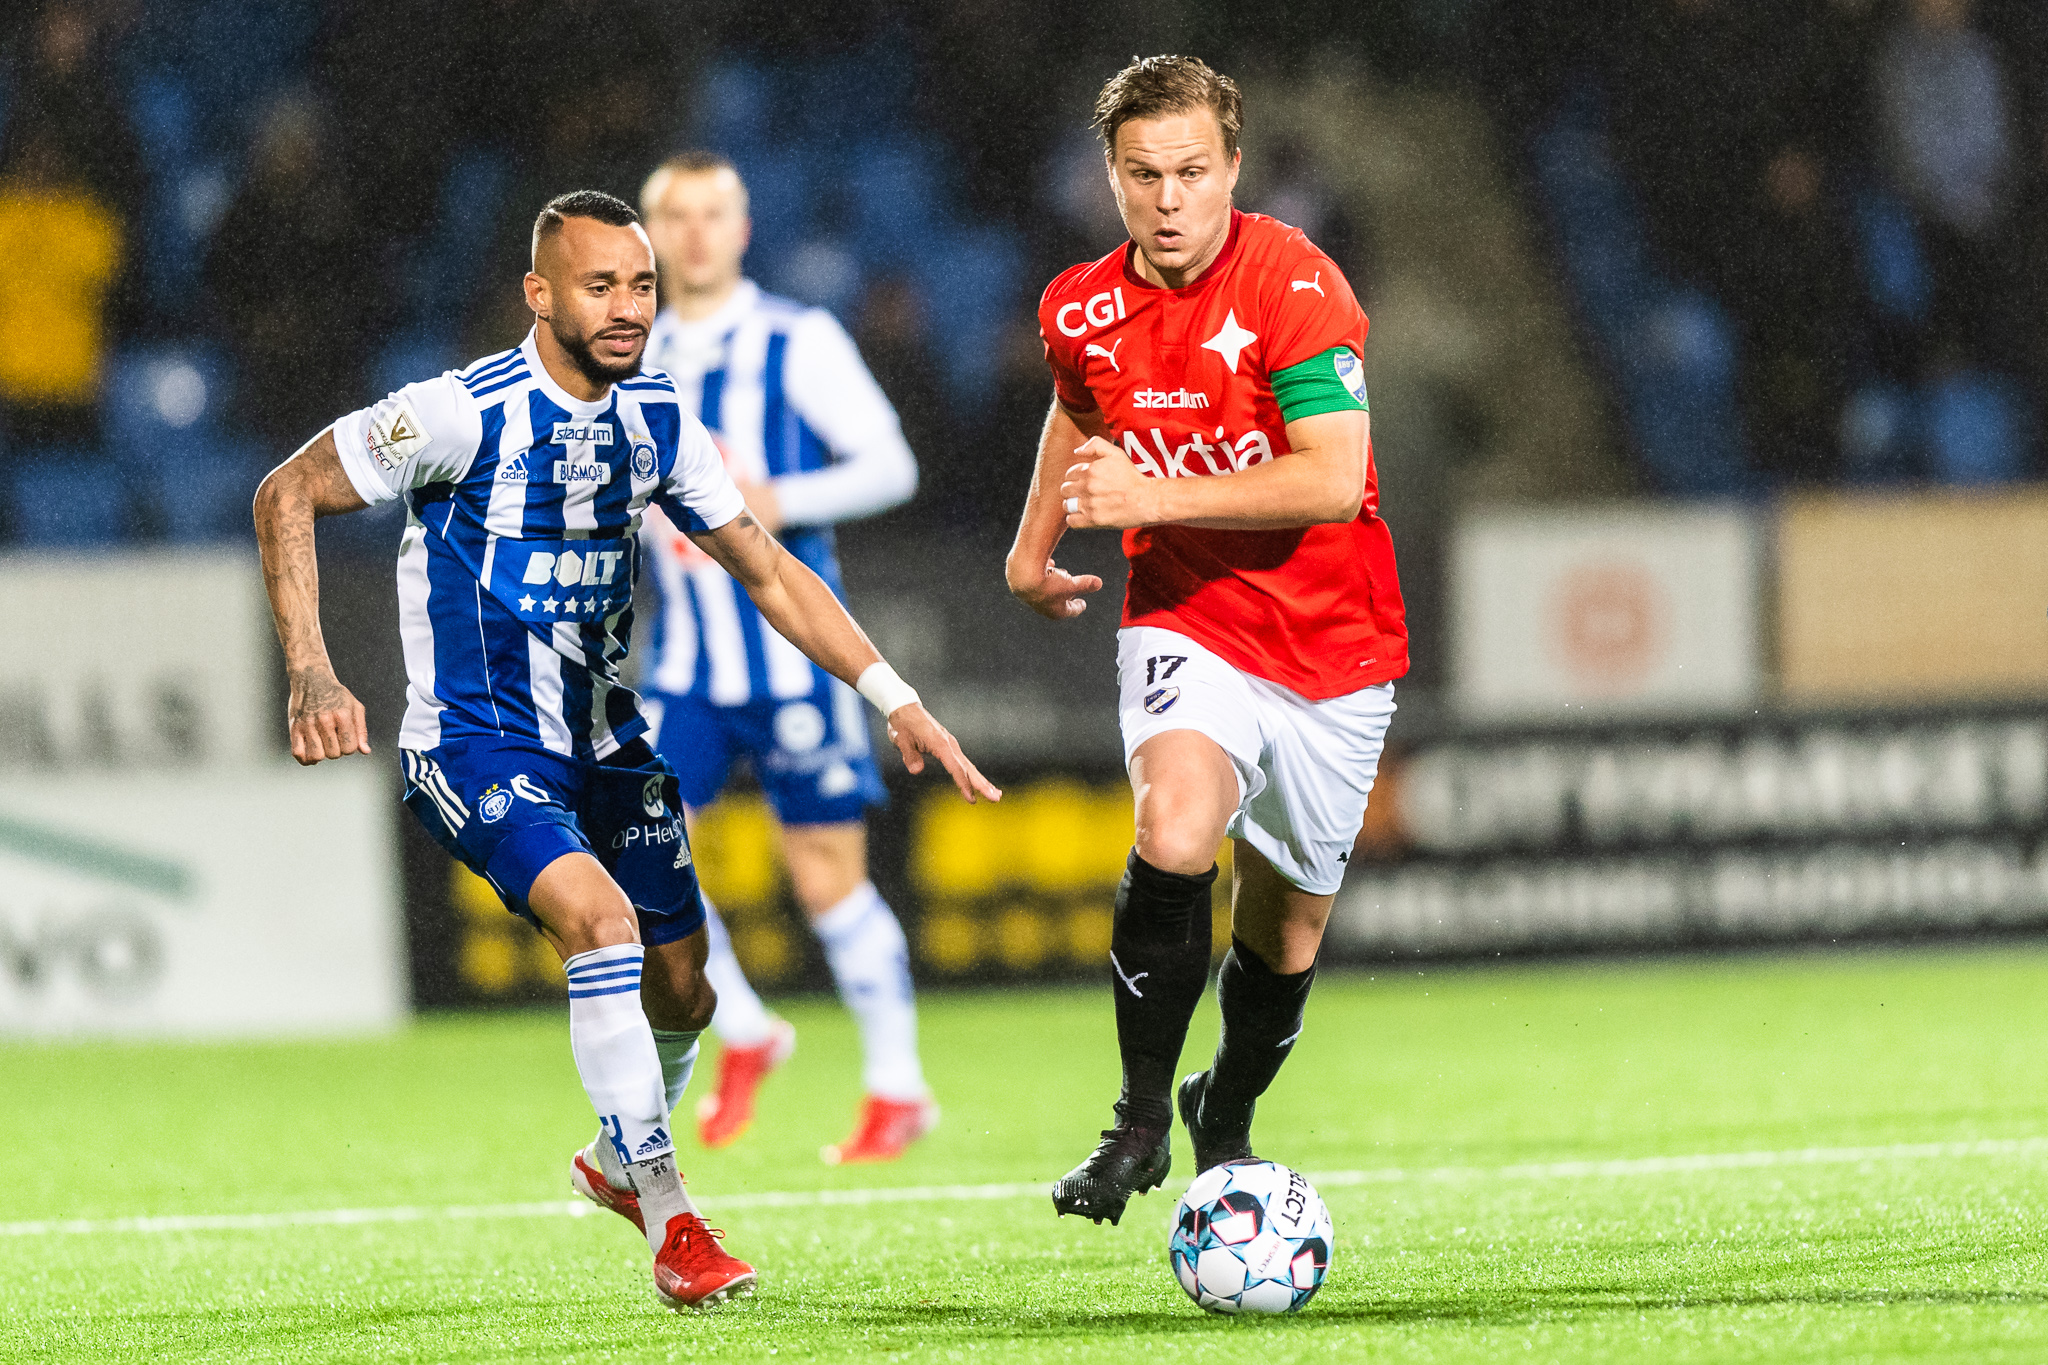 HIFK jatkaa ilman voittoja mestaruussarjassa – HJK vahvempi kauden viimeisessä derbyssä